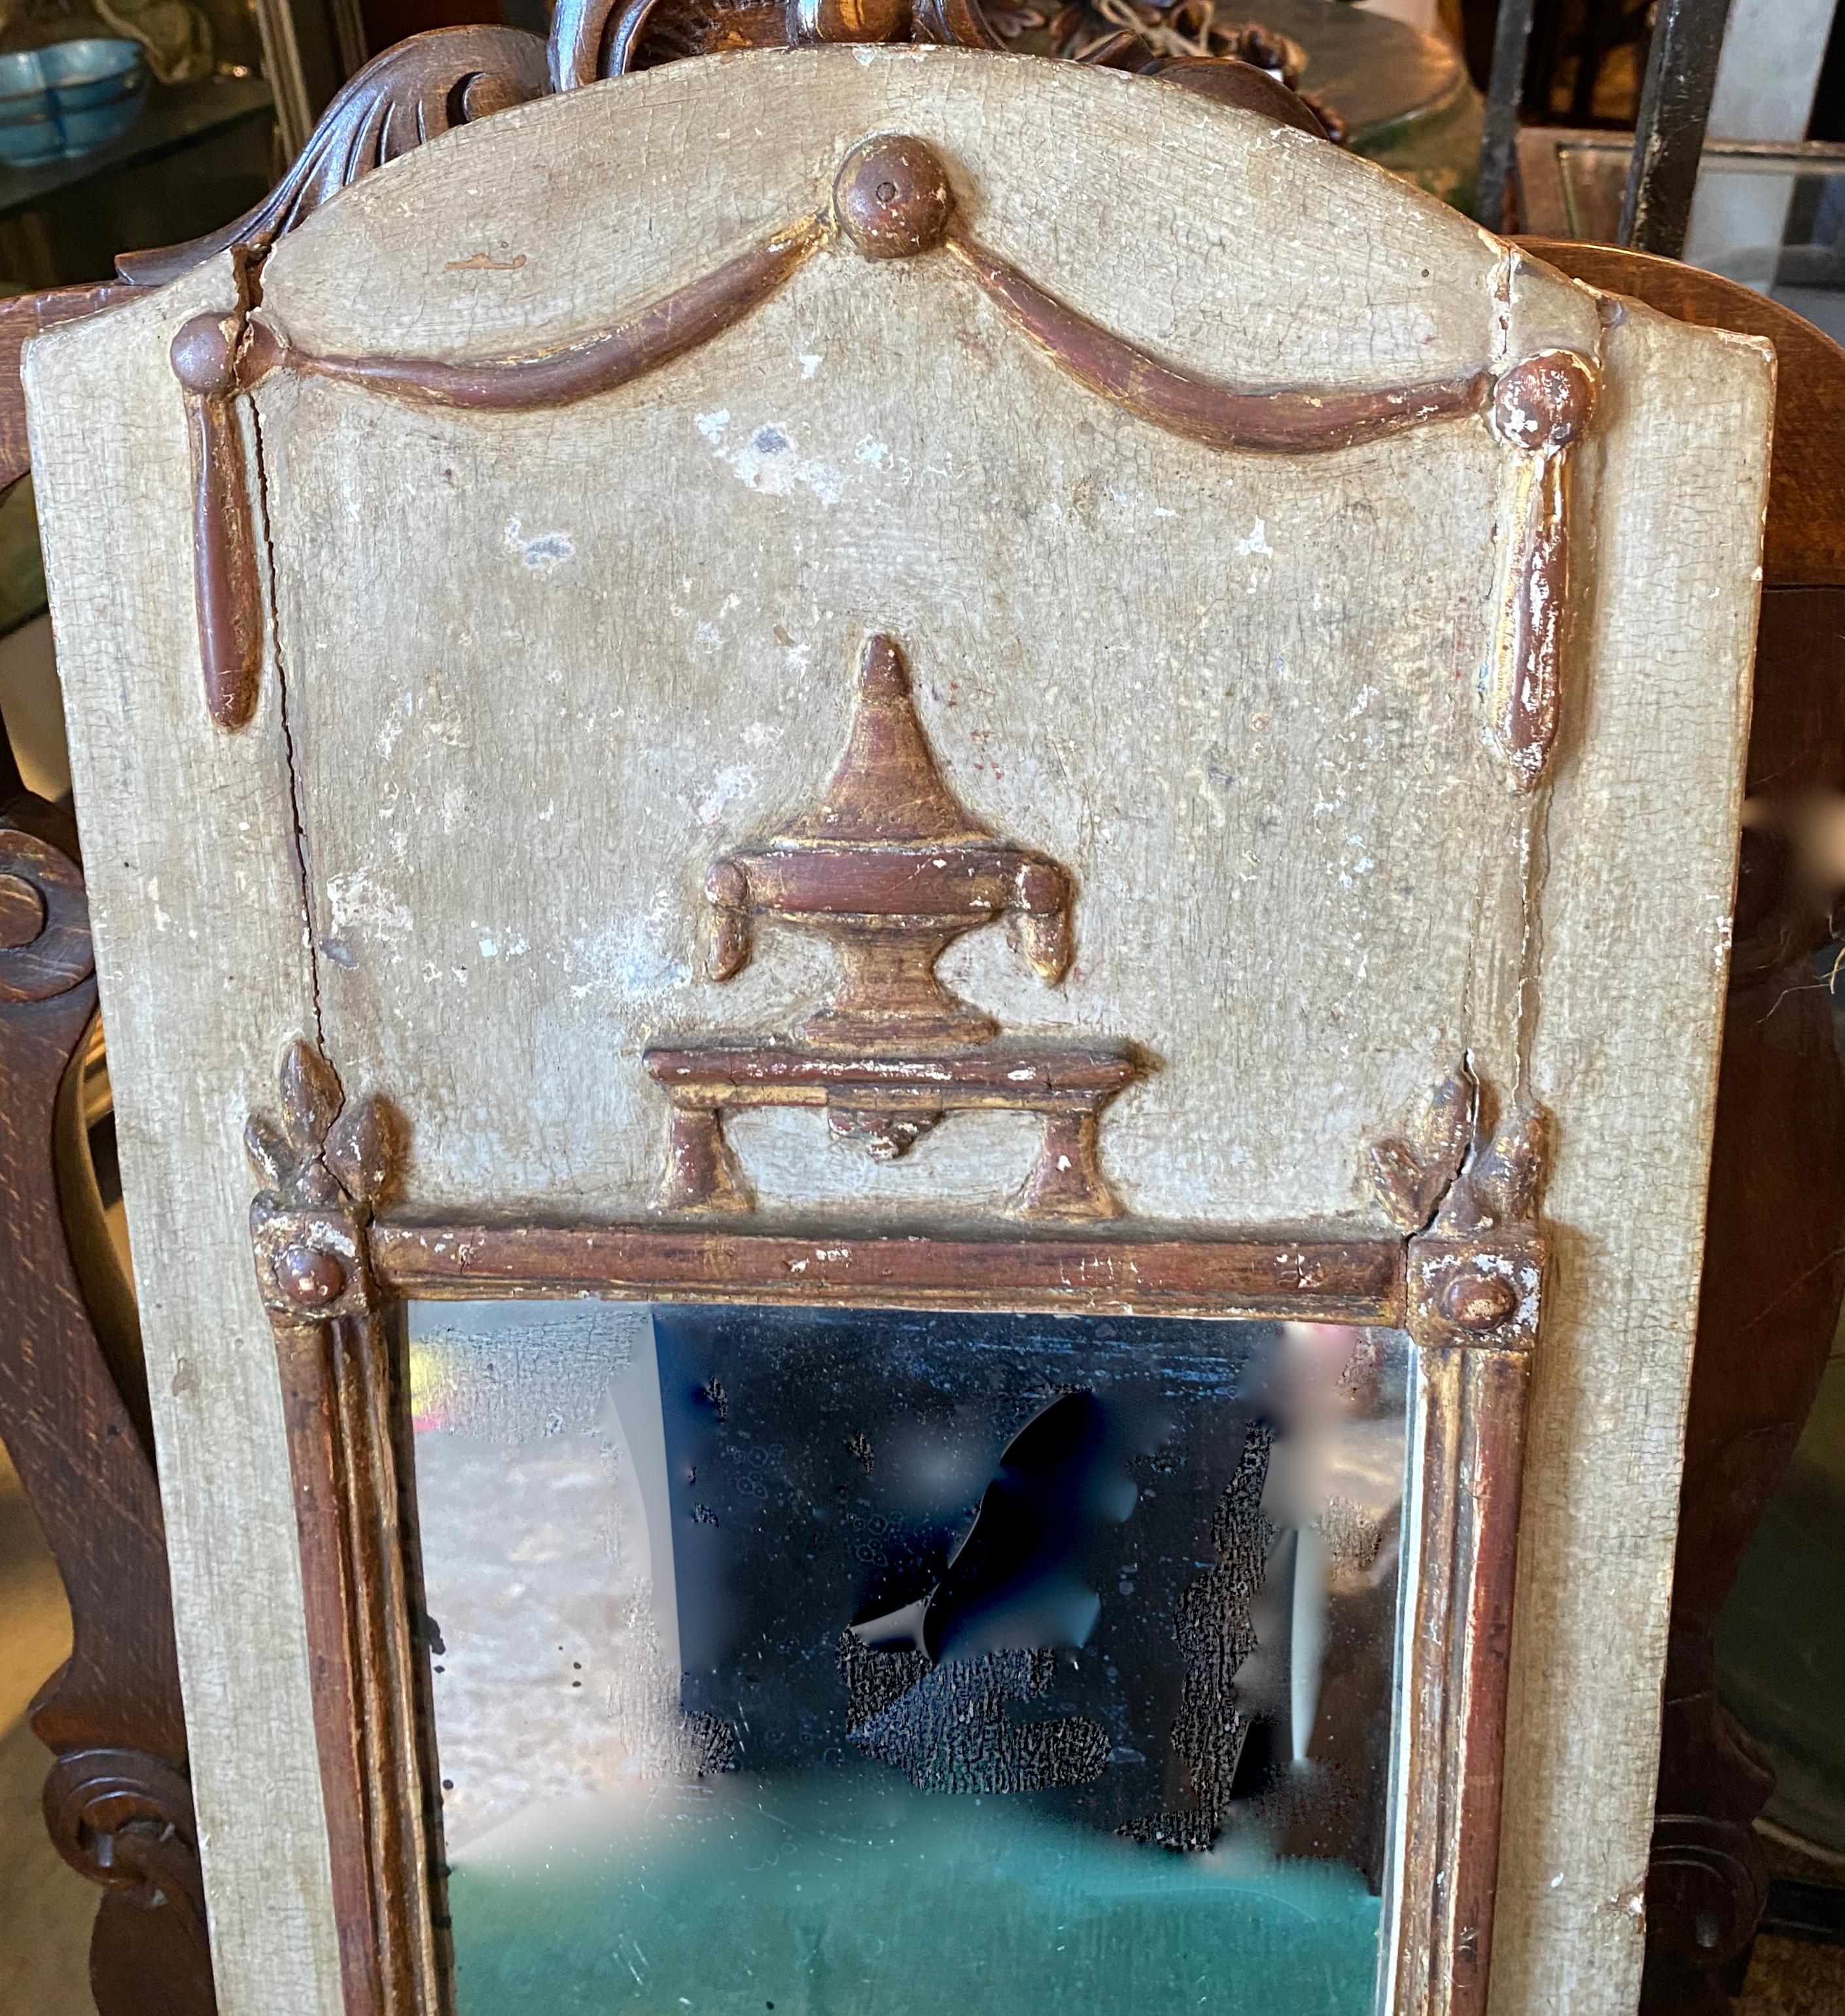 Voici un charmant miroir de mariage néoclassique de la fin du XVIIIe siècle. Ce petit trumeau a conservé sa surface peinte et dorée ainsi que son miroir d'origine et a acquis une merveilleuse patine naturelle profonde.
Les miroirs de mariage étaient